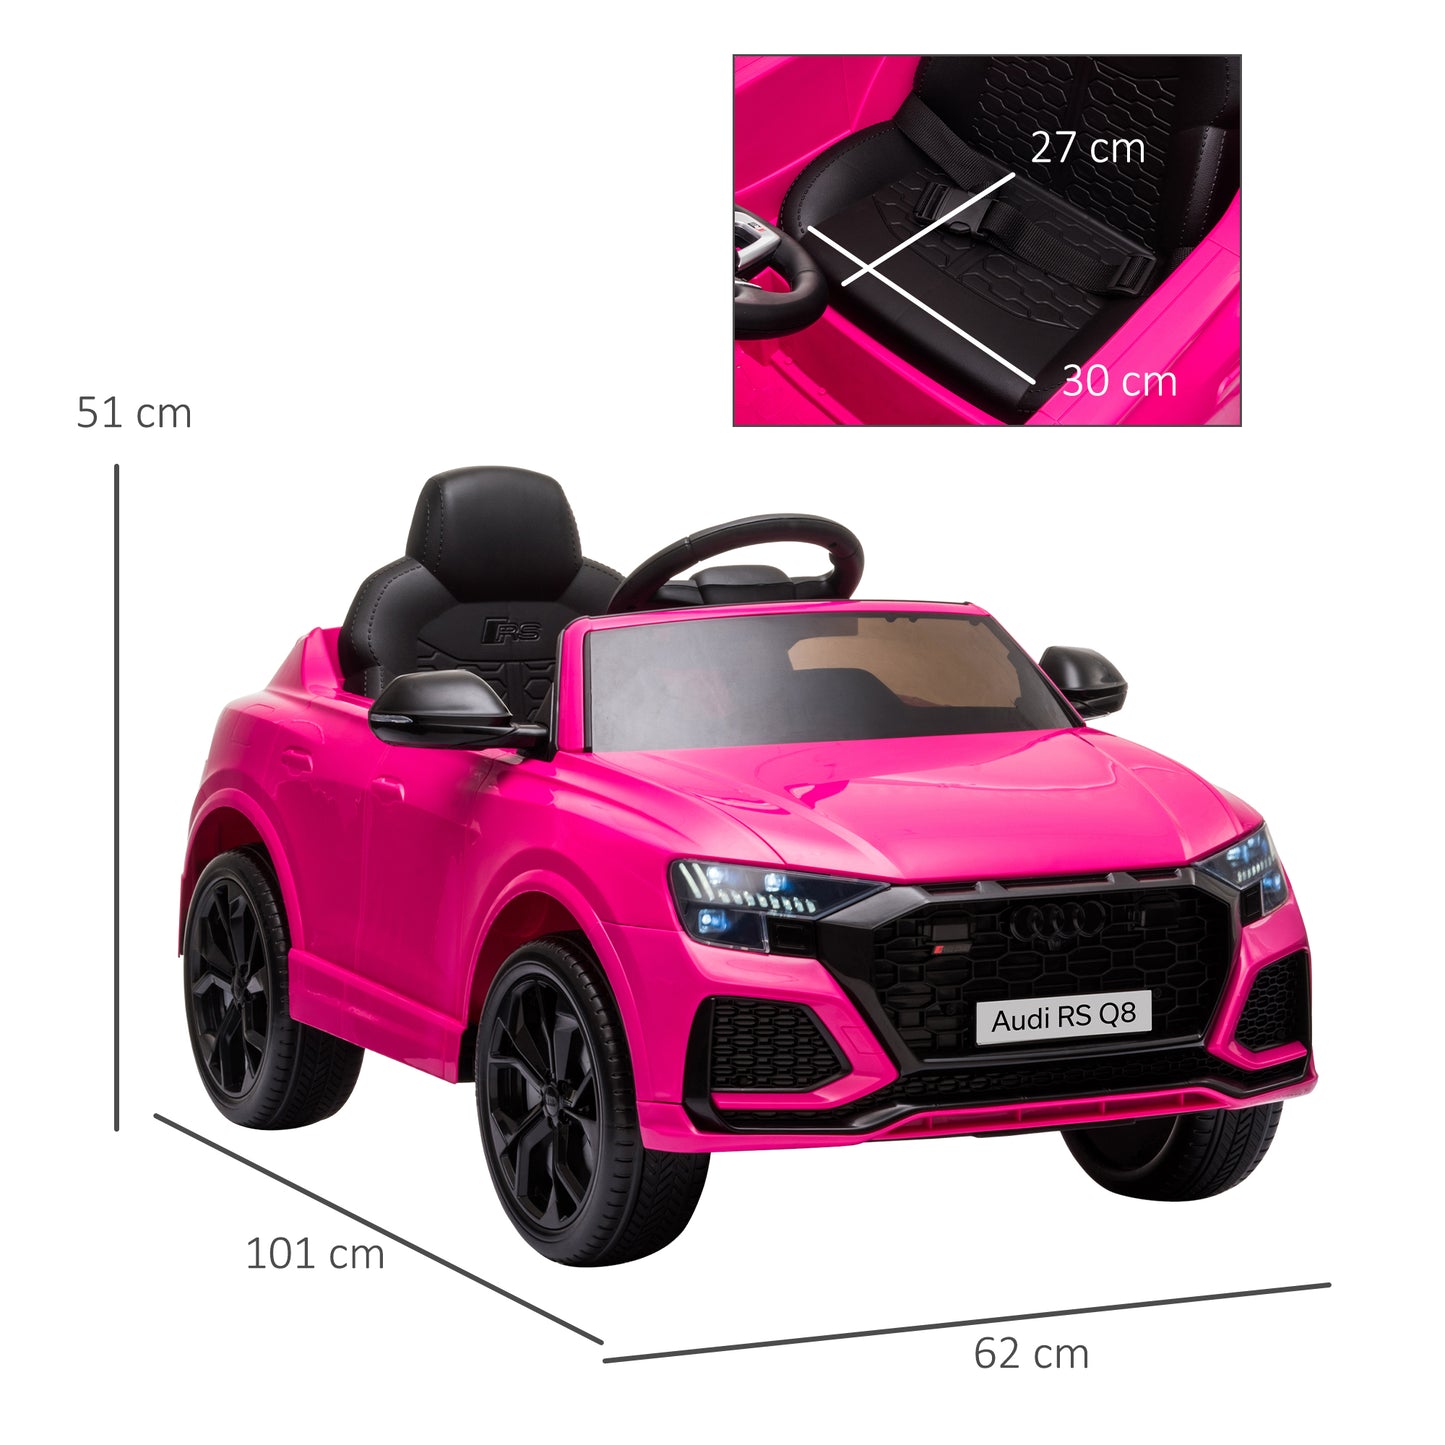 HOMCOM Coche Eléctrico Infantil +3 Años Licencia Audi RS Q8 con Batería 6V 2 Motores Mando a Distancia Música MP3 Bocina y Luces Velocidad Máx. 3km/h 101x62x51 cm Rosa